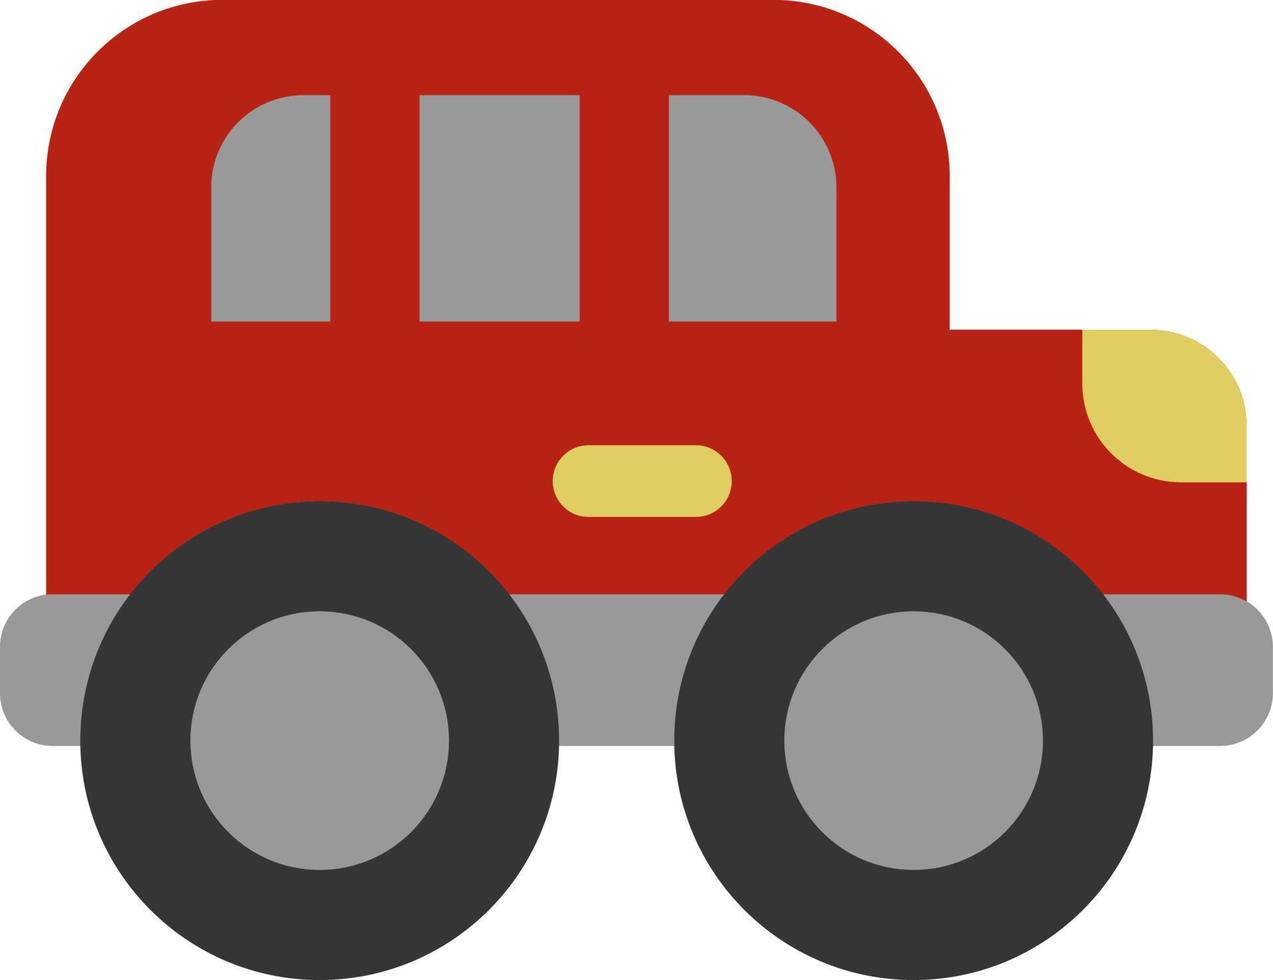 Offroad roter Transportwagen, Illustration, Vektor auf weißem Hintergrund.